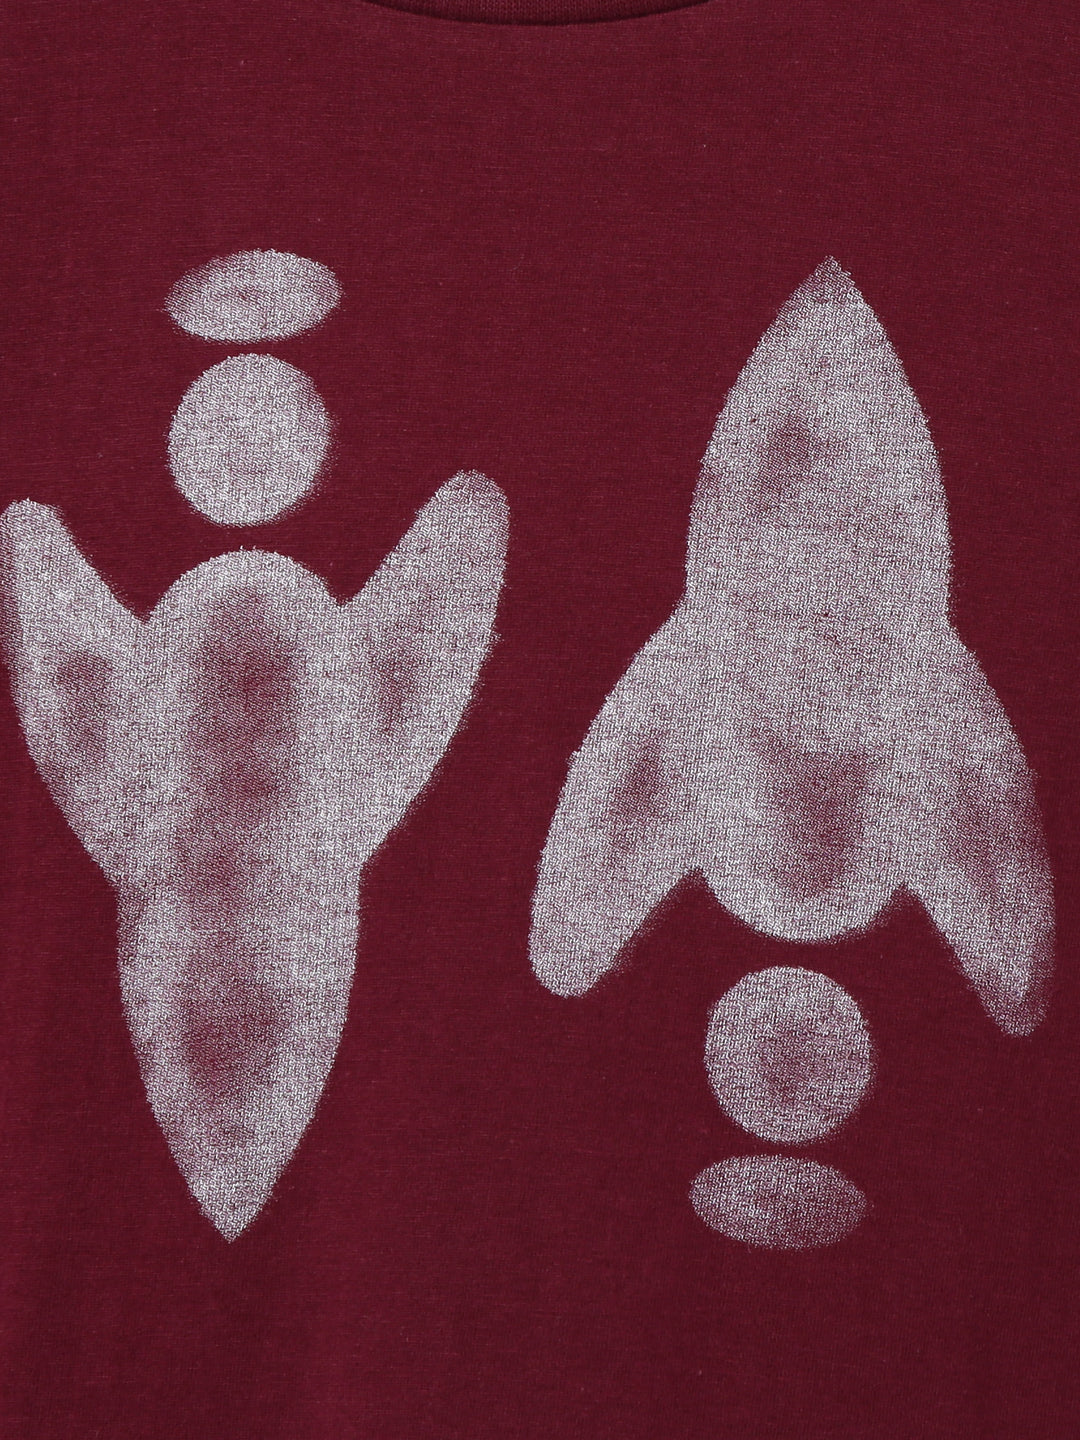 Boys Brand Logo Printed Maroon T-Shirt